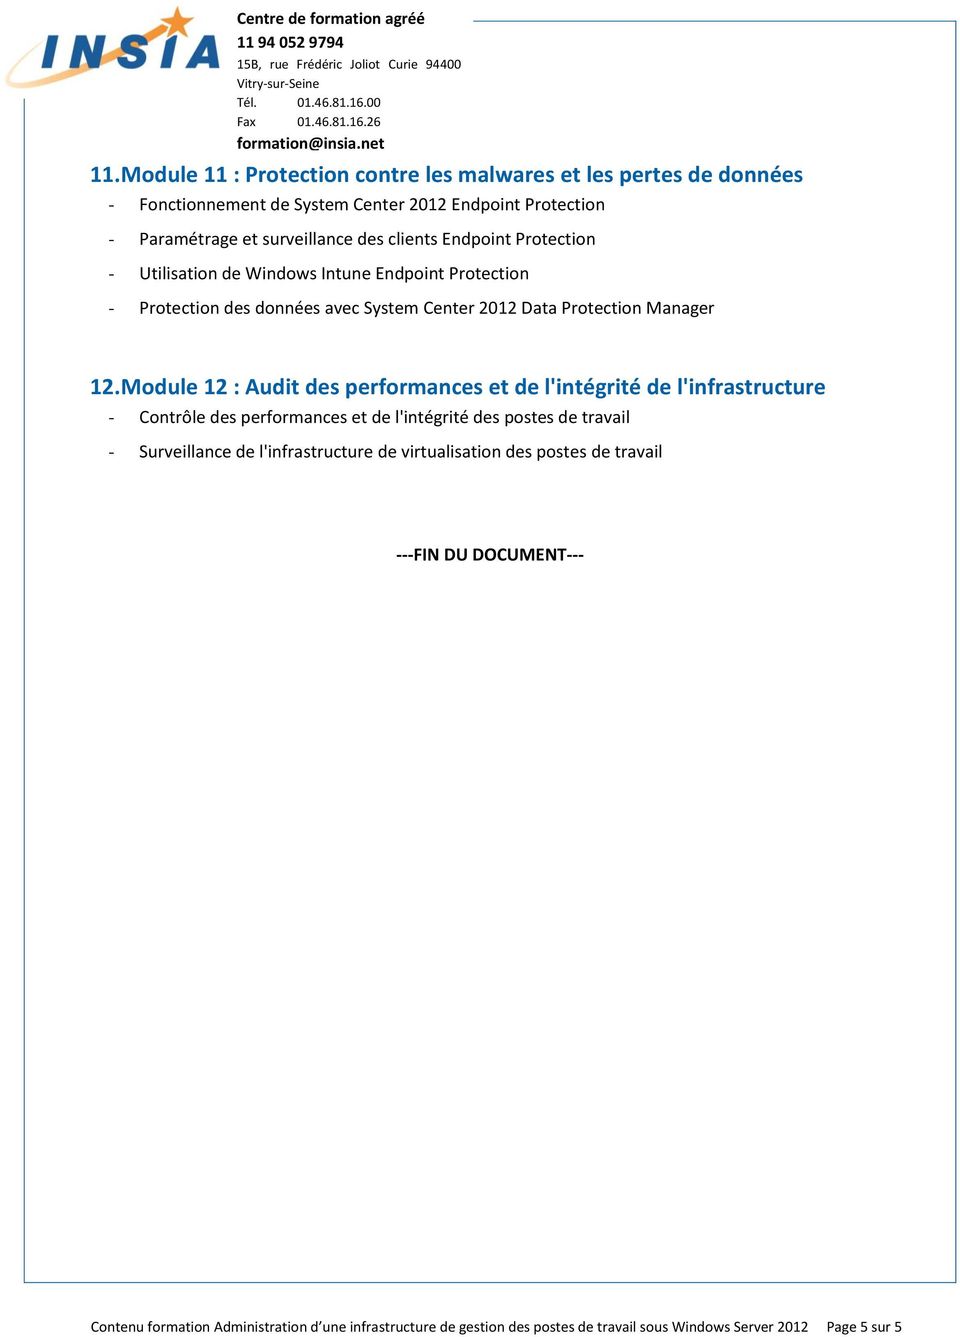 Module 12 : Audit des performances et de l'intégrité de l'infrastructure Contrôle des performances et de l'intégrité des postes de travail Surveillance de